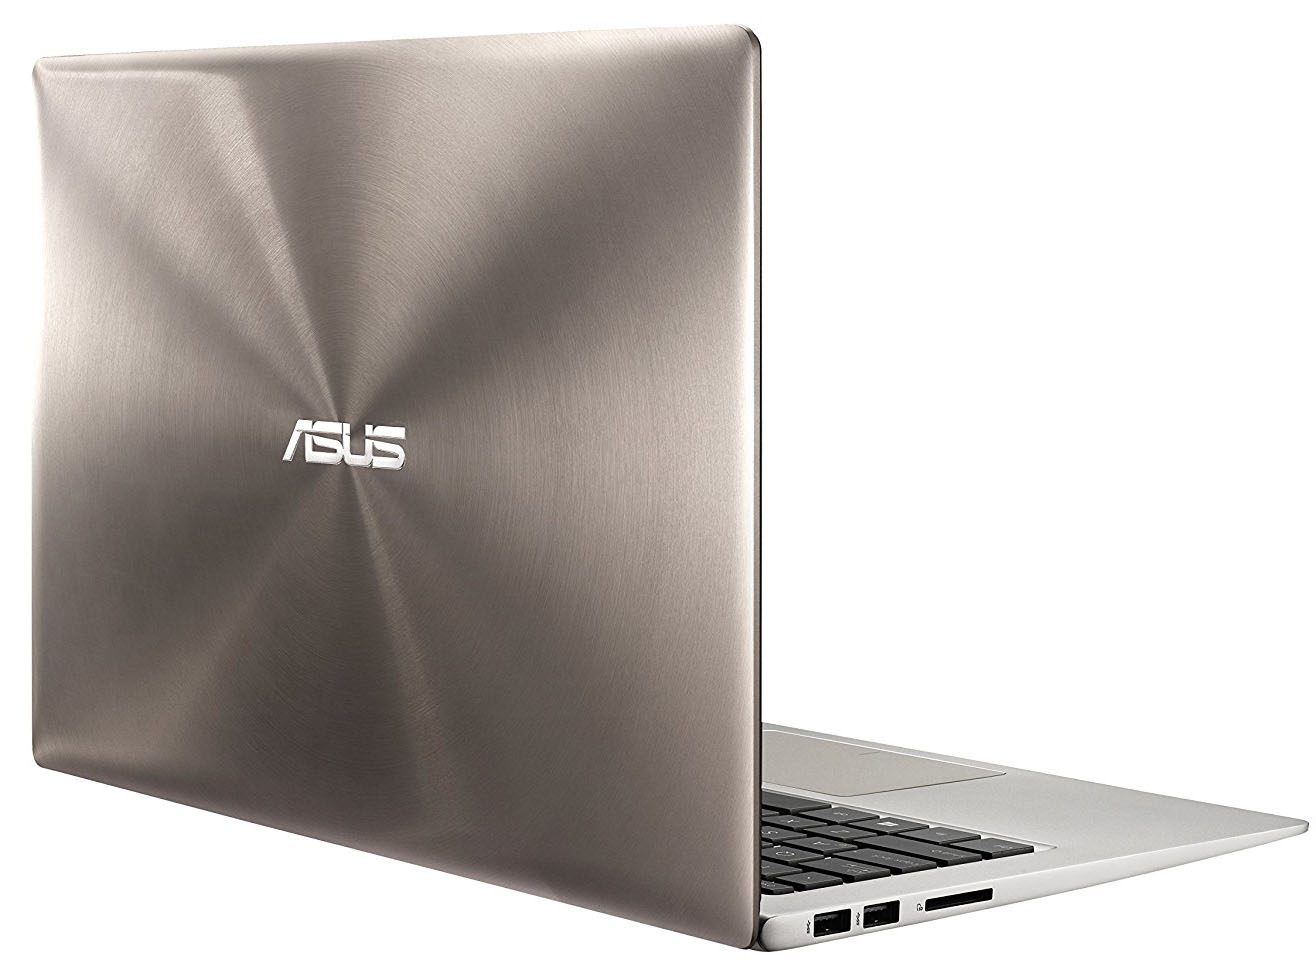 ASUS ZenBook UX303UA - i7-6500U · Intel HD Graphics 520 · 13.3